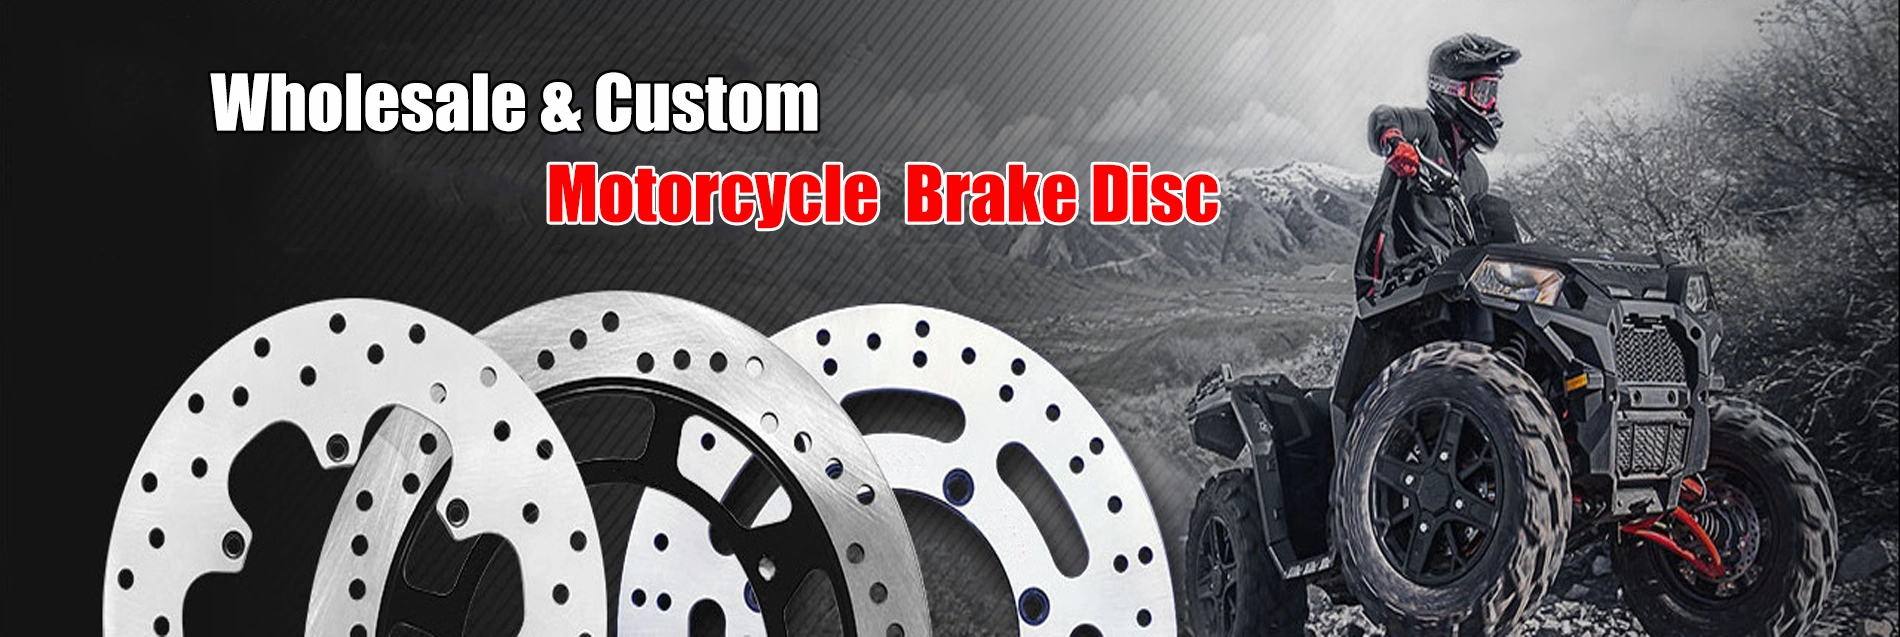 Custom motorcycle 220mm rear brake disc for KTM dirt bike